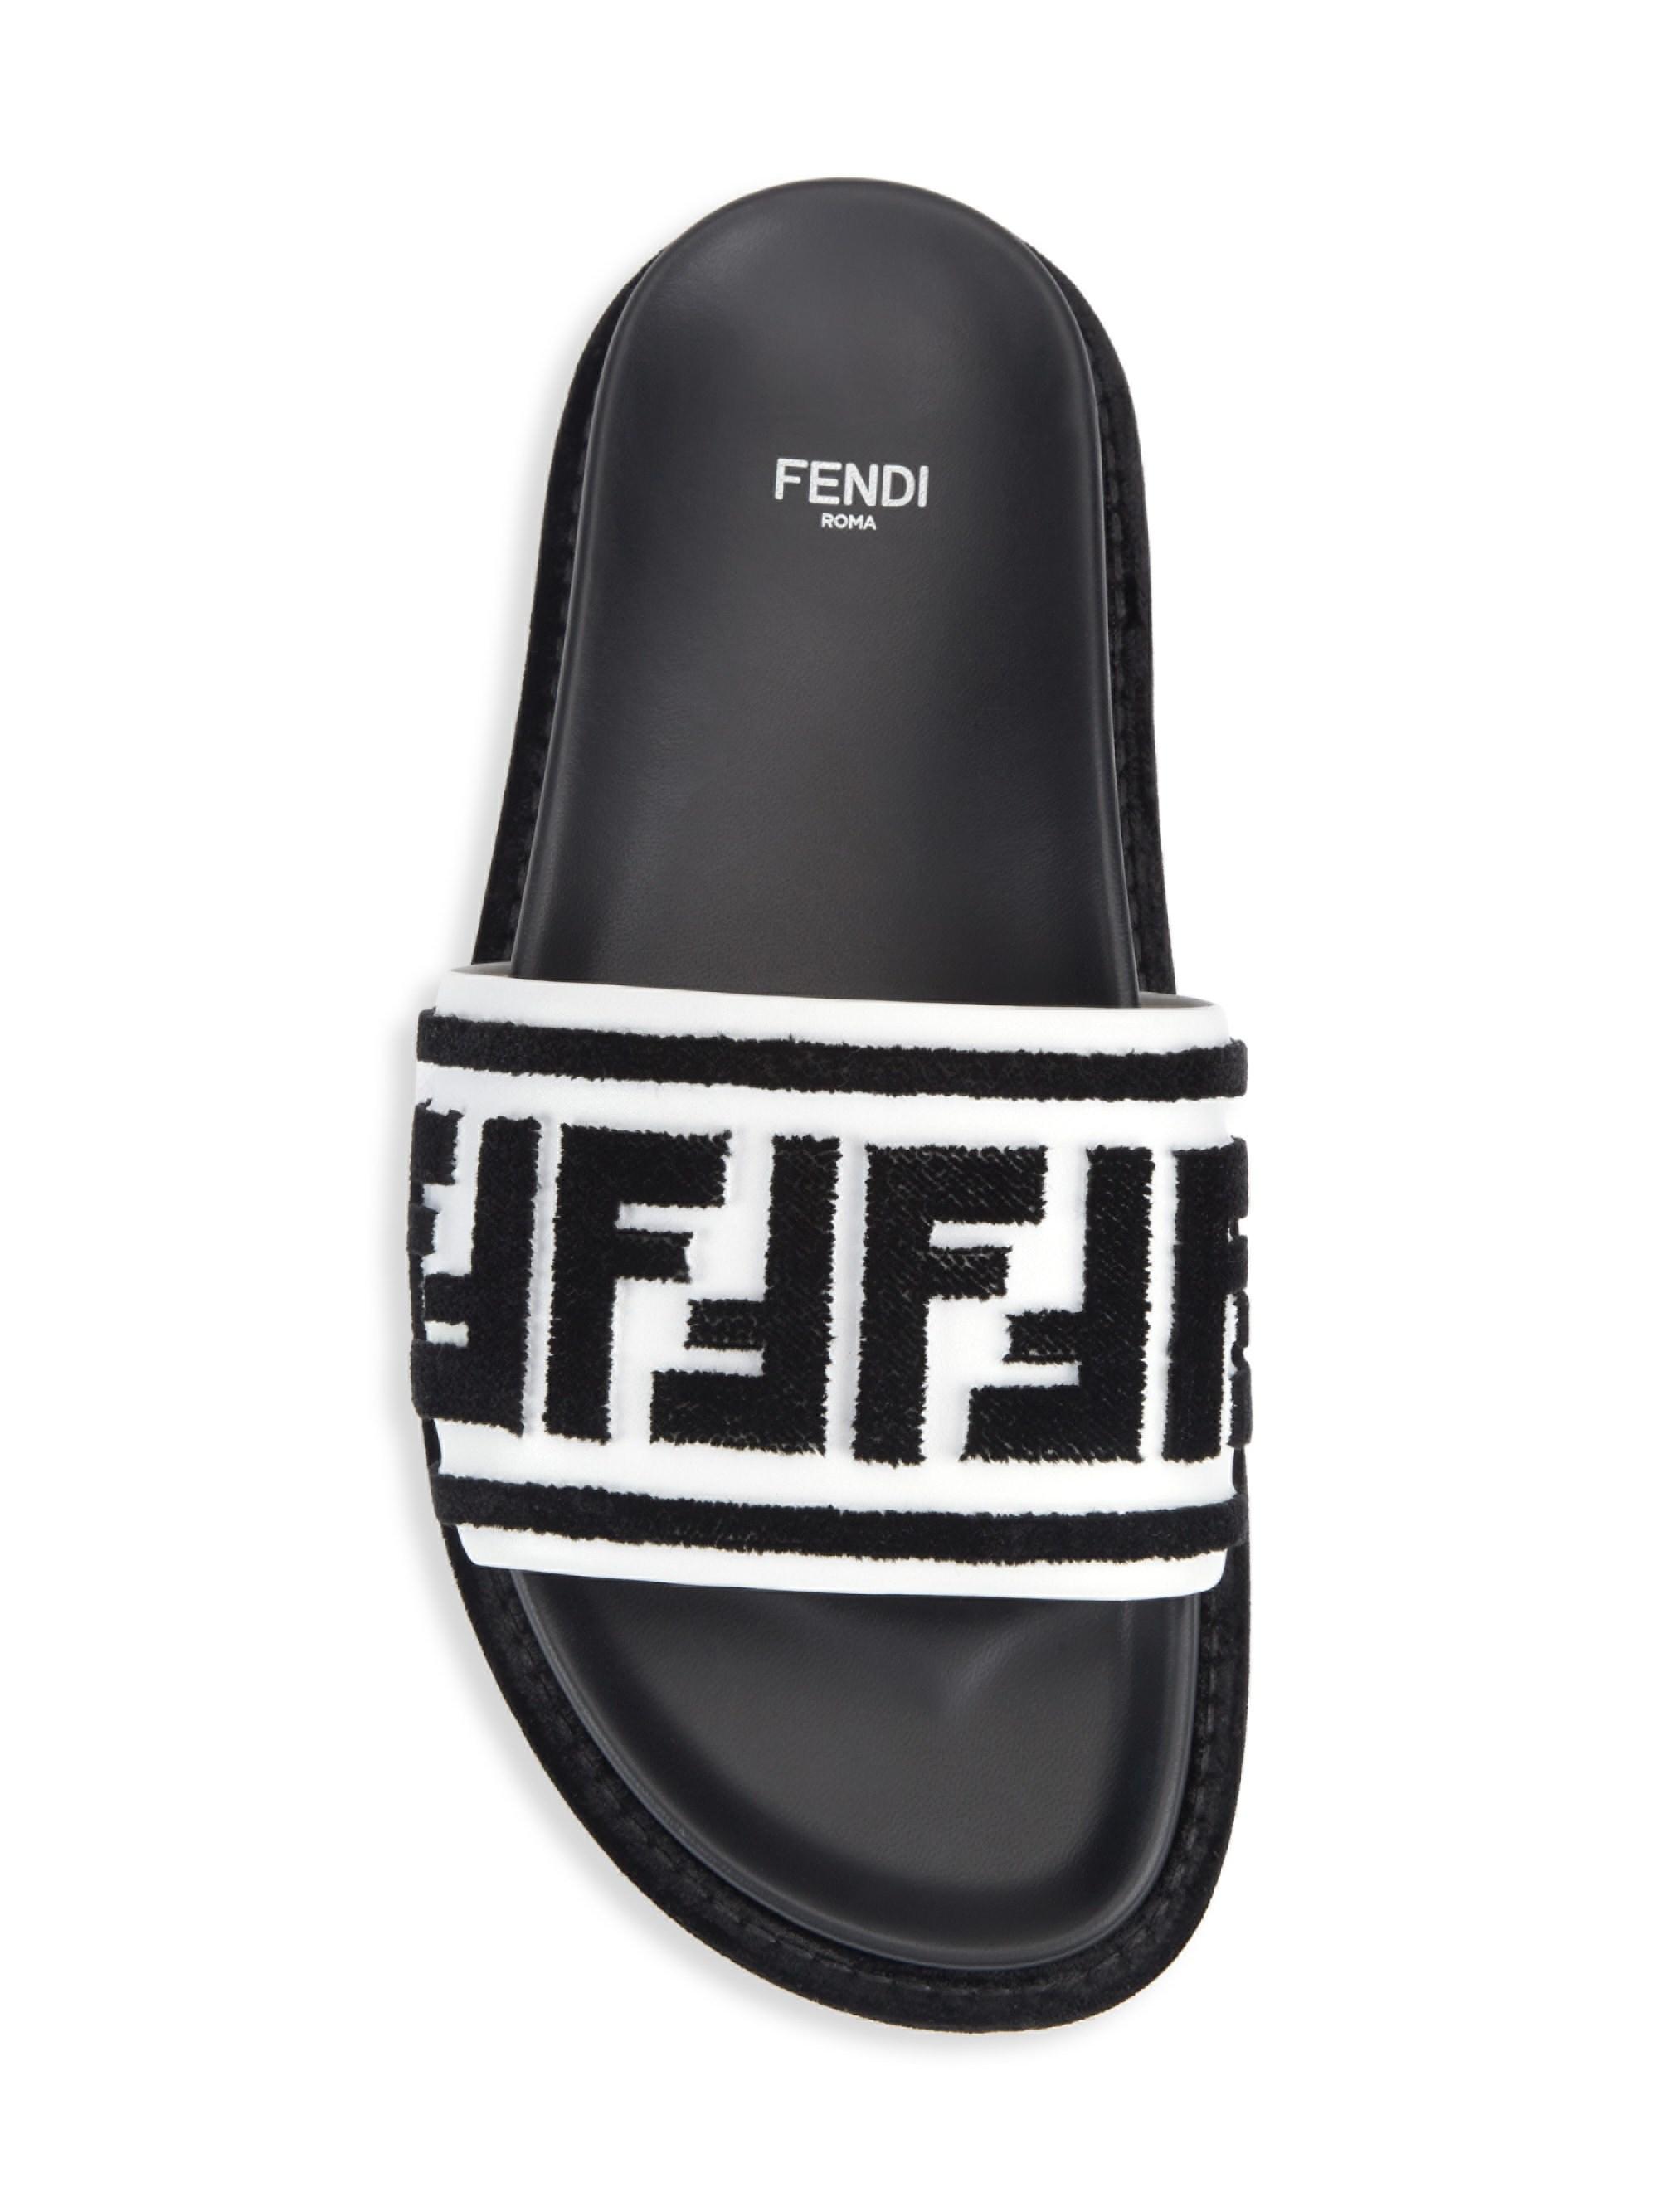 Fendi Fur Women's Logo Pool Slides in Black/ White (Black) - Lyst